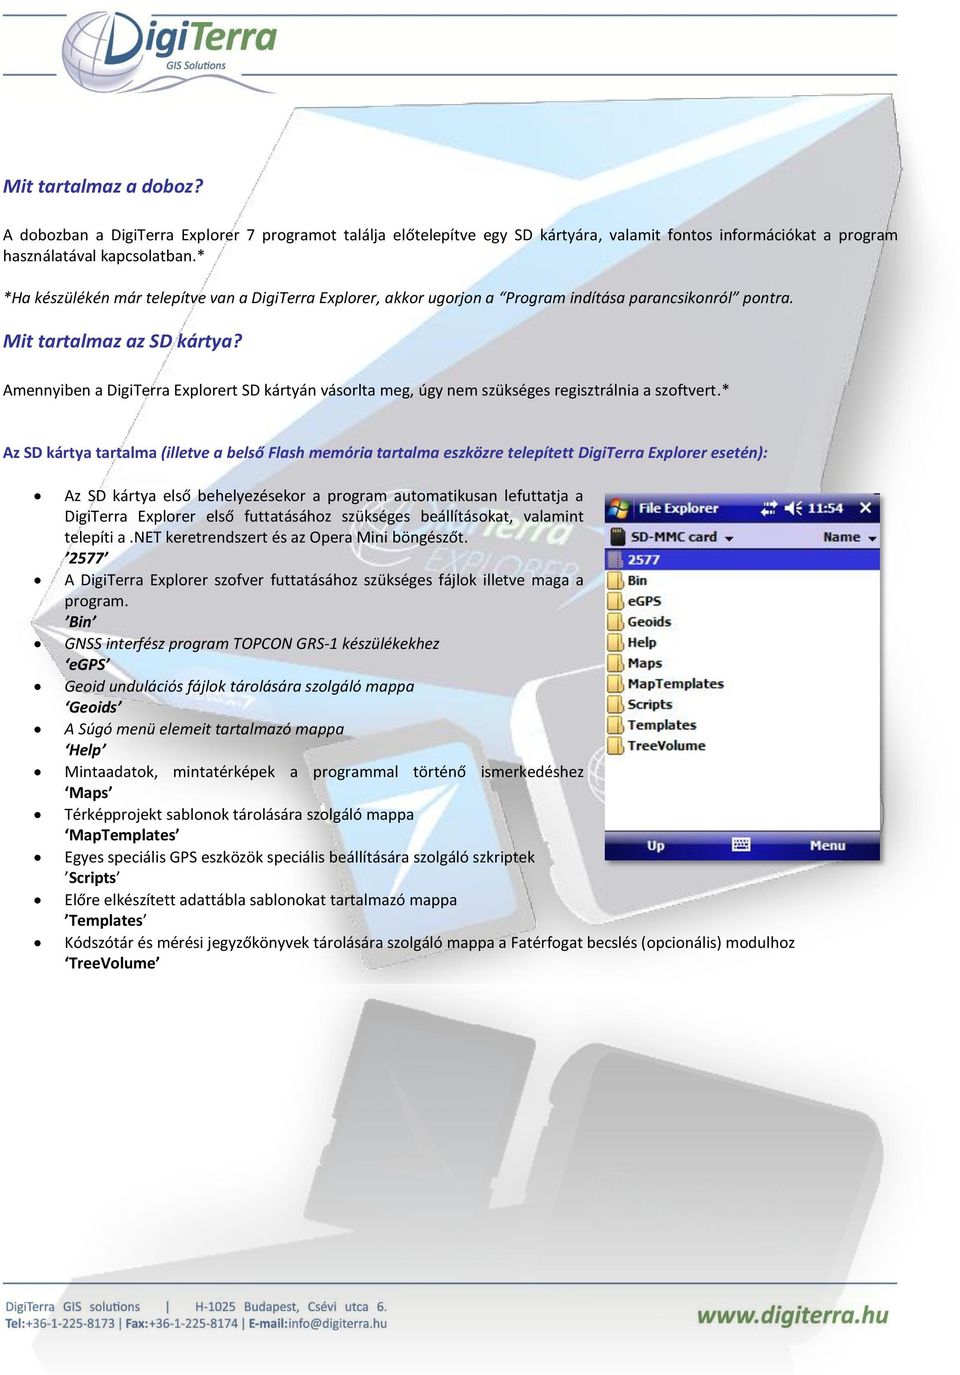 Amennyiben a DigiTerra Explorert SD kártyán vásorlta meg, úgy nem szükséges regisztrálnia a szoftvert.